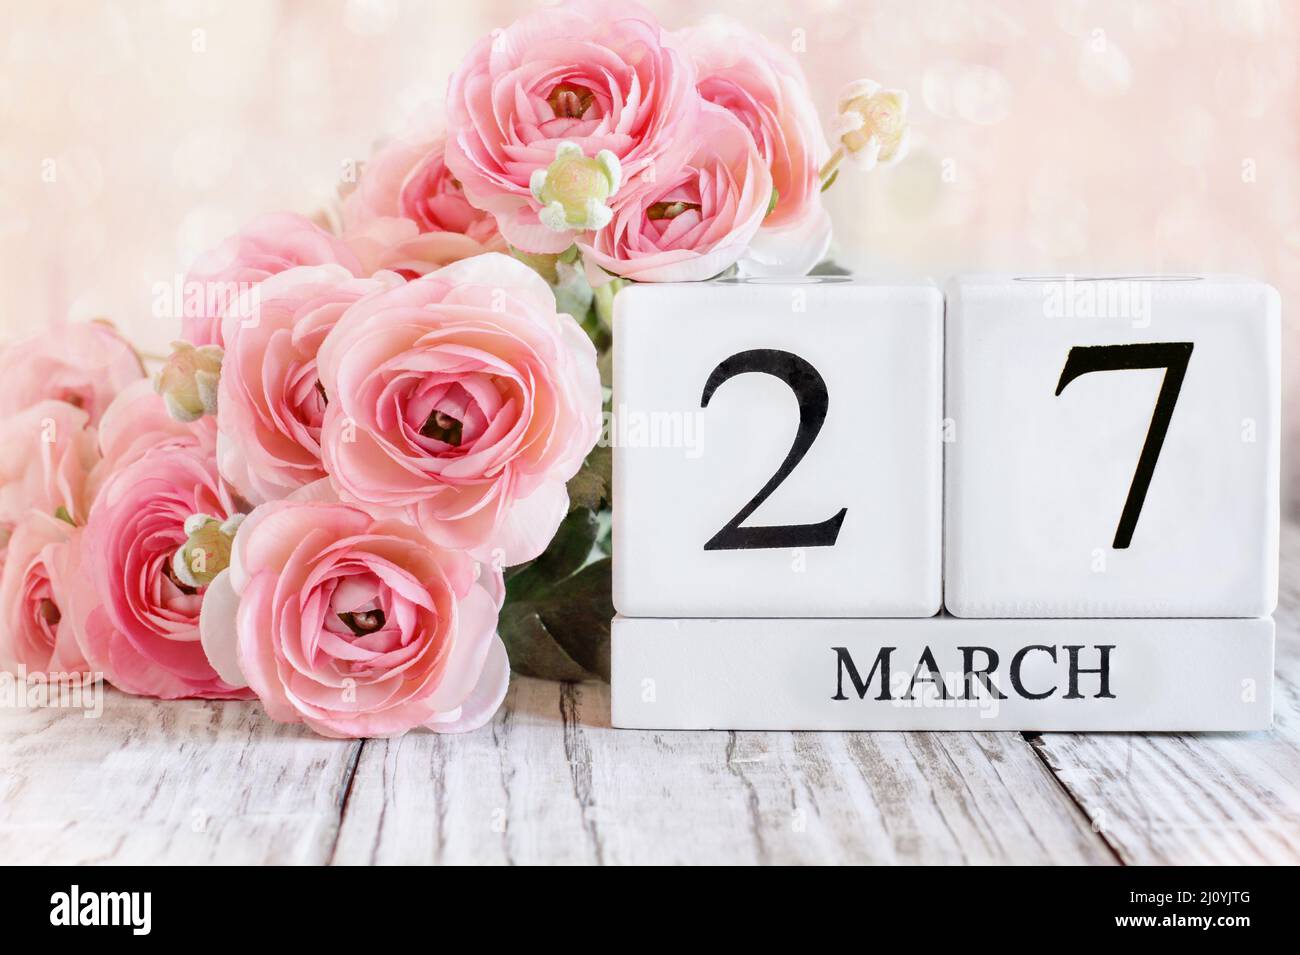 Weiße Holz-Kalenderblöcke mit dem Datum März 27. und rosa Ranunculus-Blumen über einem Holztisch. Selektiver Fokus mit unscharfem Hintergrund. Stockfoto